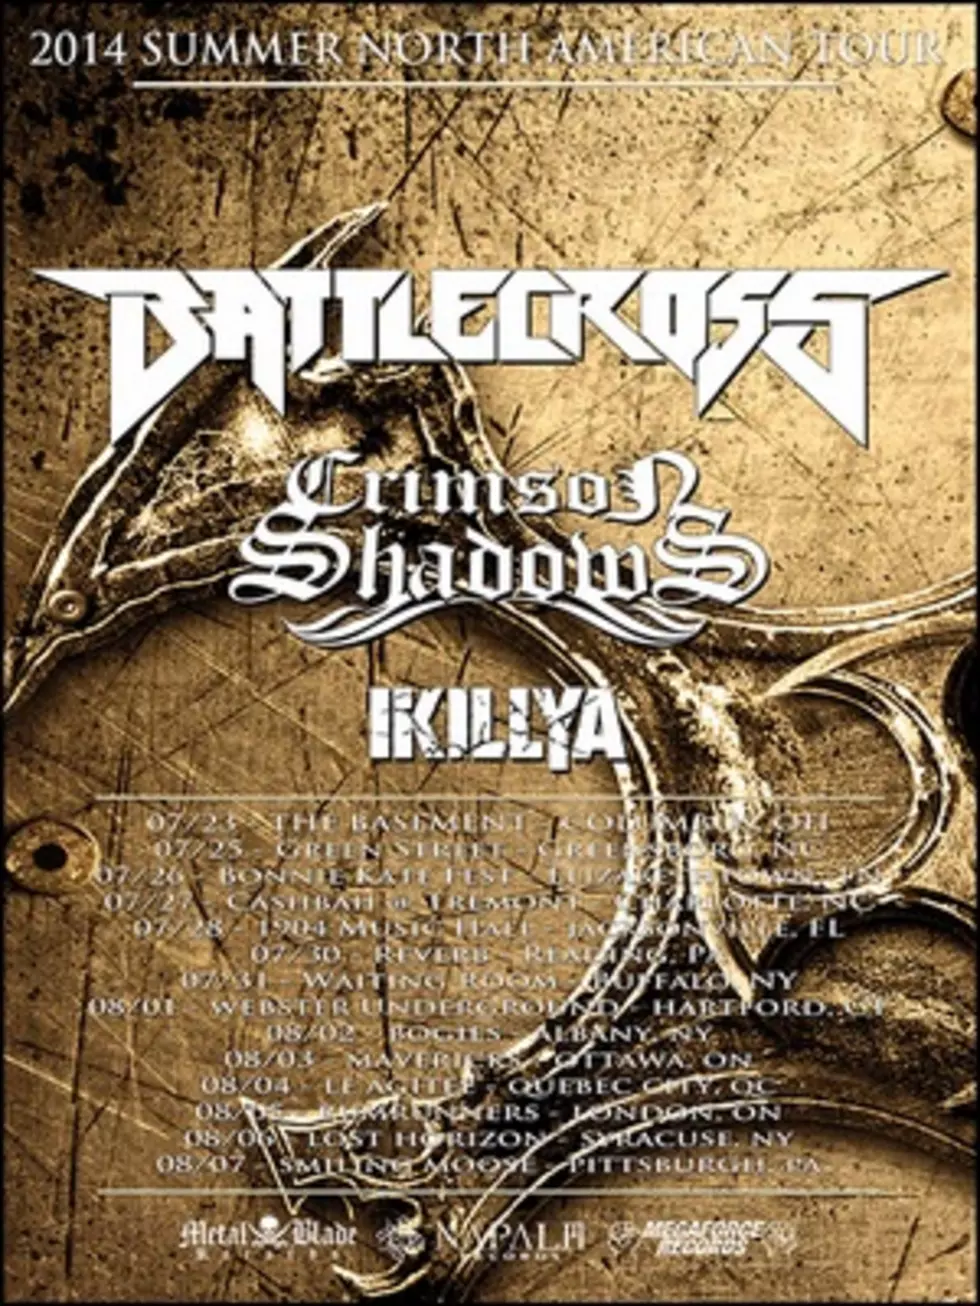 Battlecross Plots Summer Tour, Plans New Album